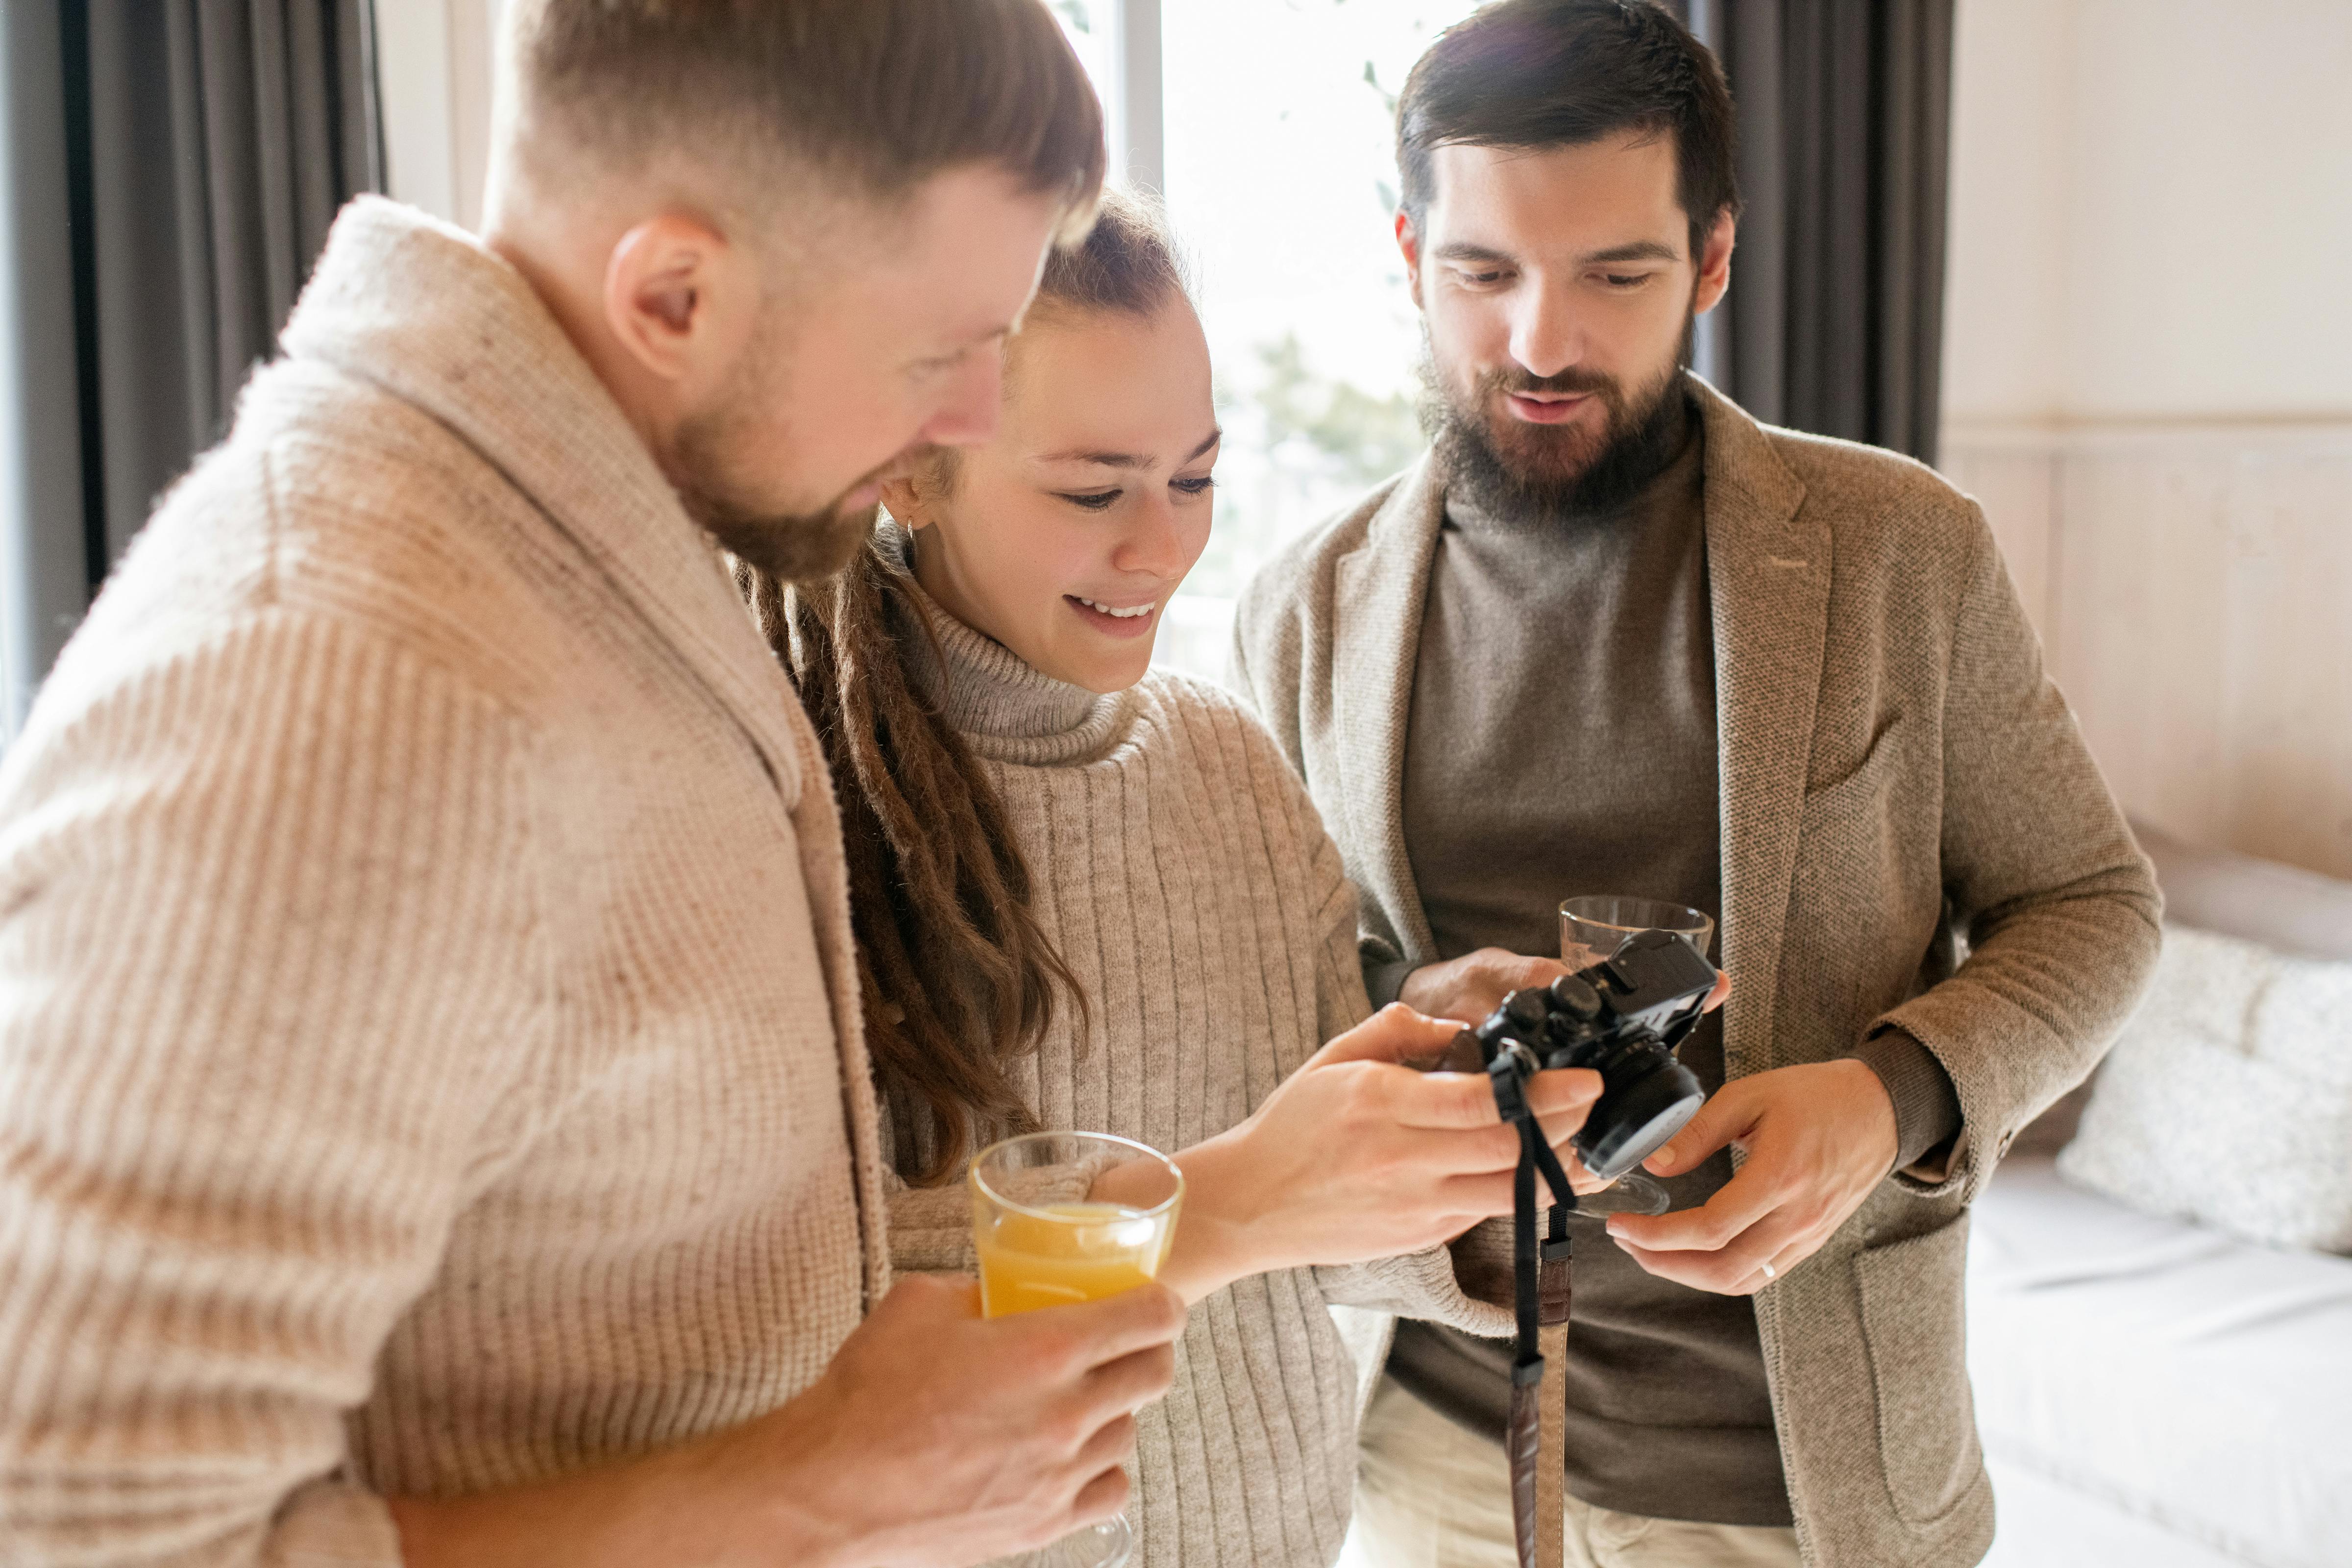 Ein Foto von drei Personen, die in eine Kamera schauen | Quelle: Pexels